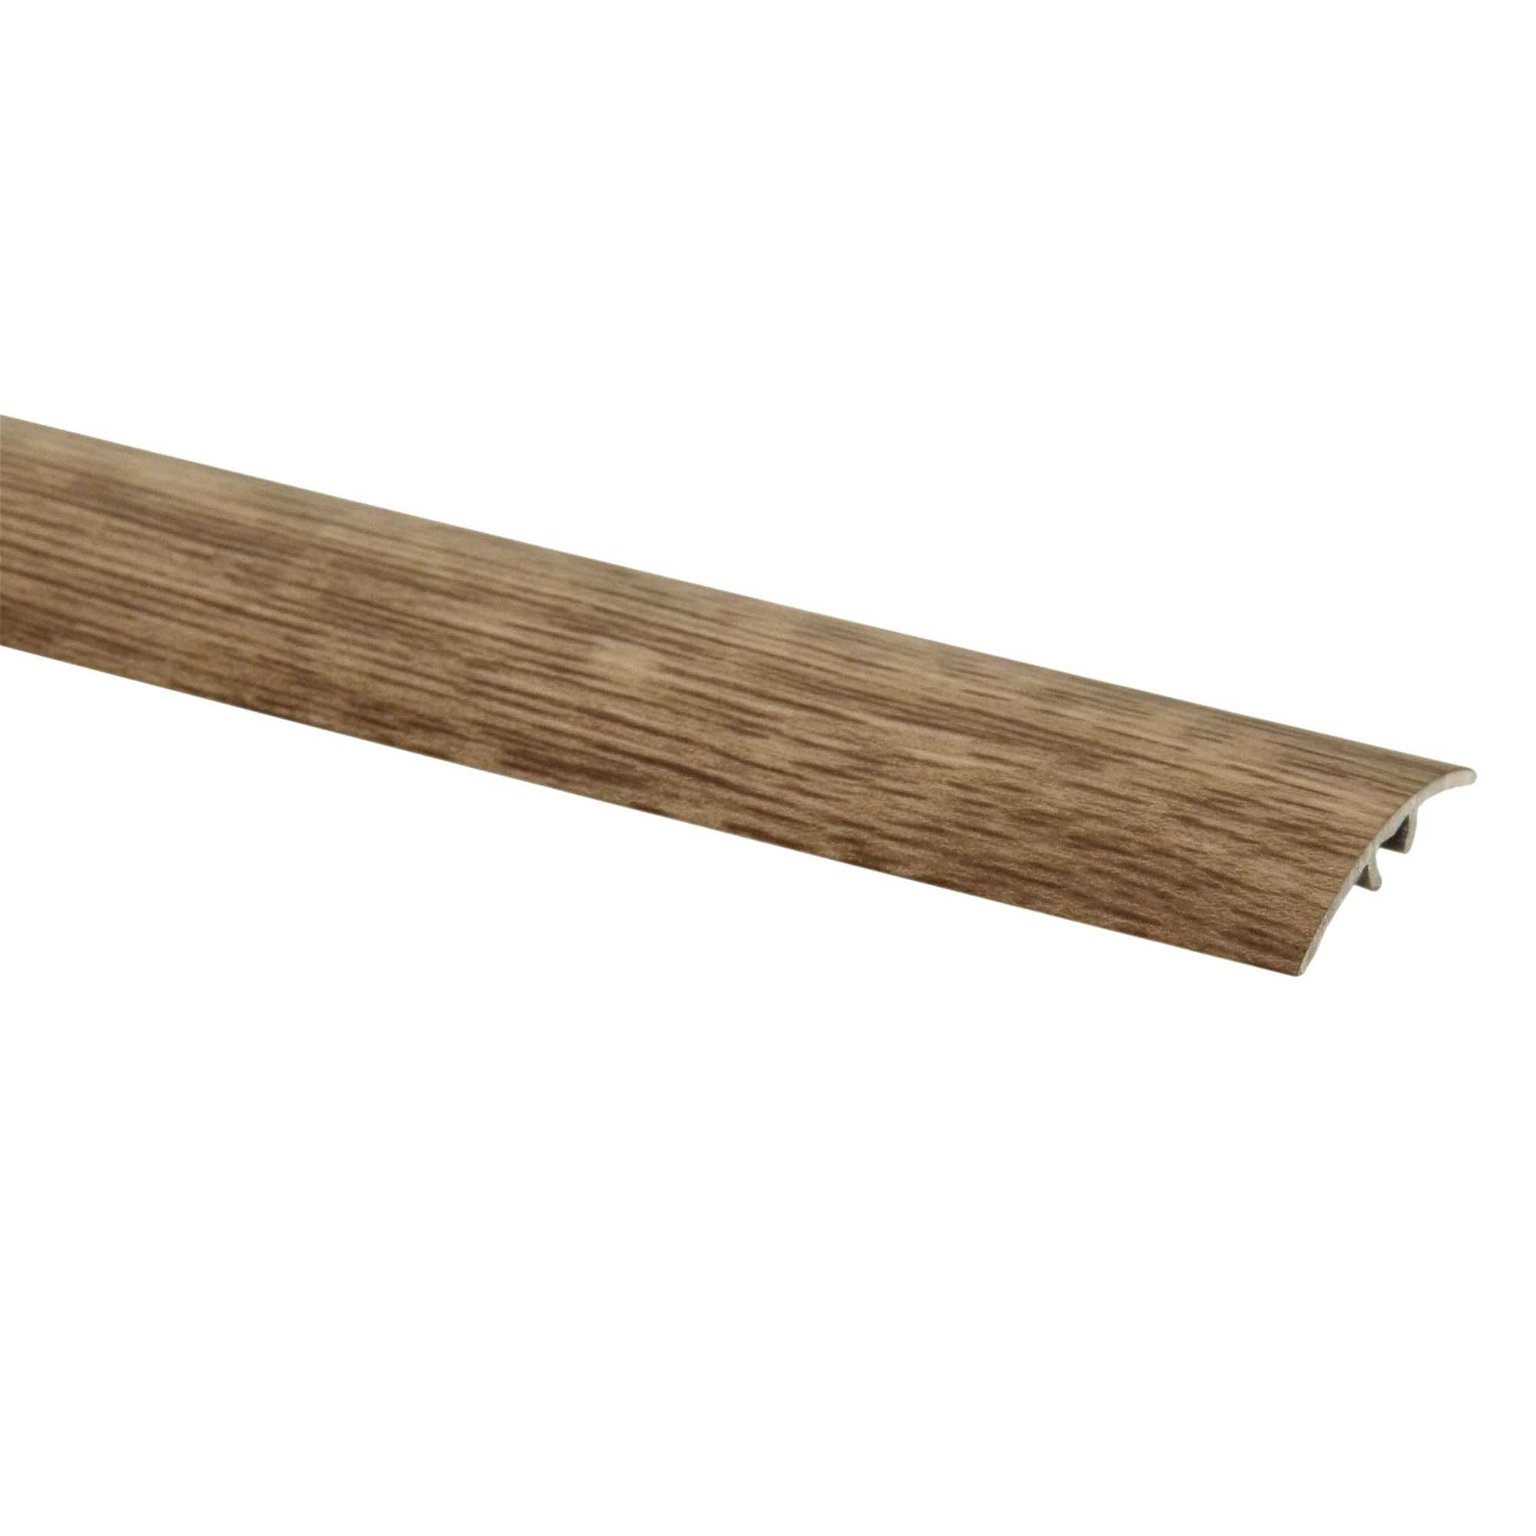 Aliumininė grindų juostelė SM1 W3, sidabrinio ąžuolo sp., 30 mm pločio, 186 cm ilgio